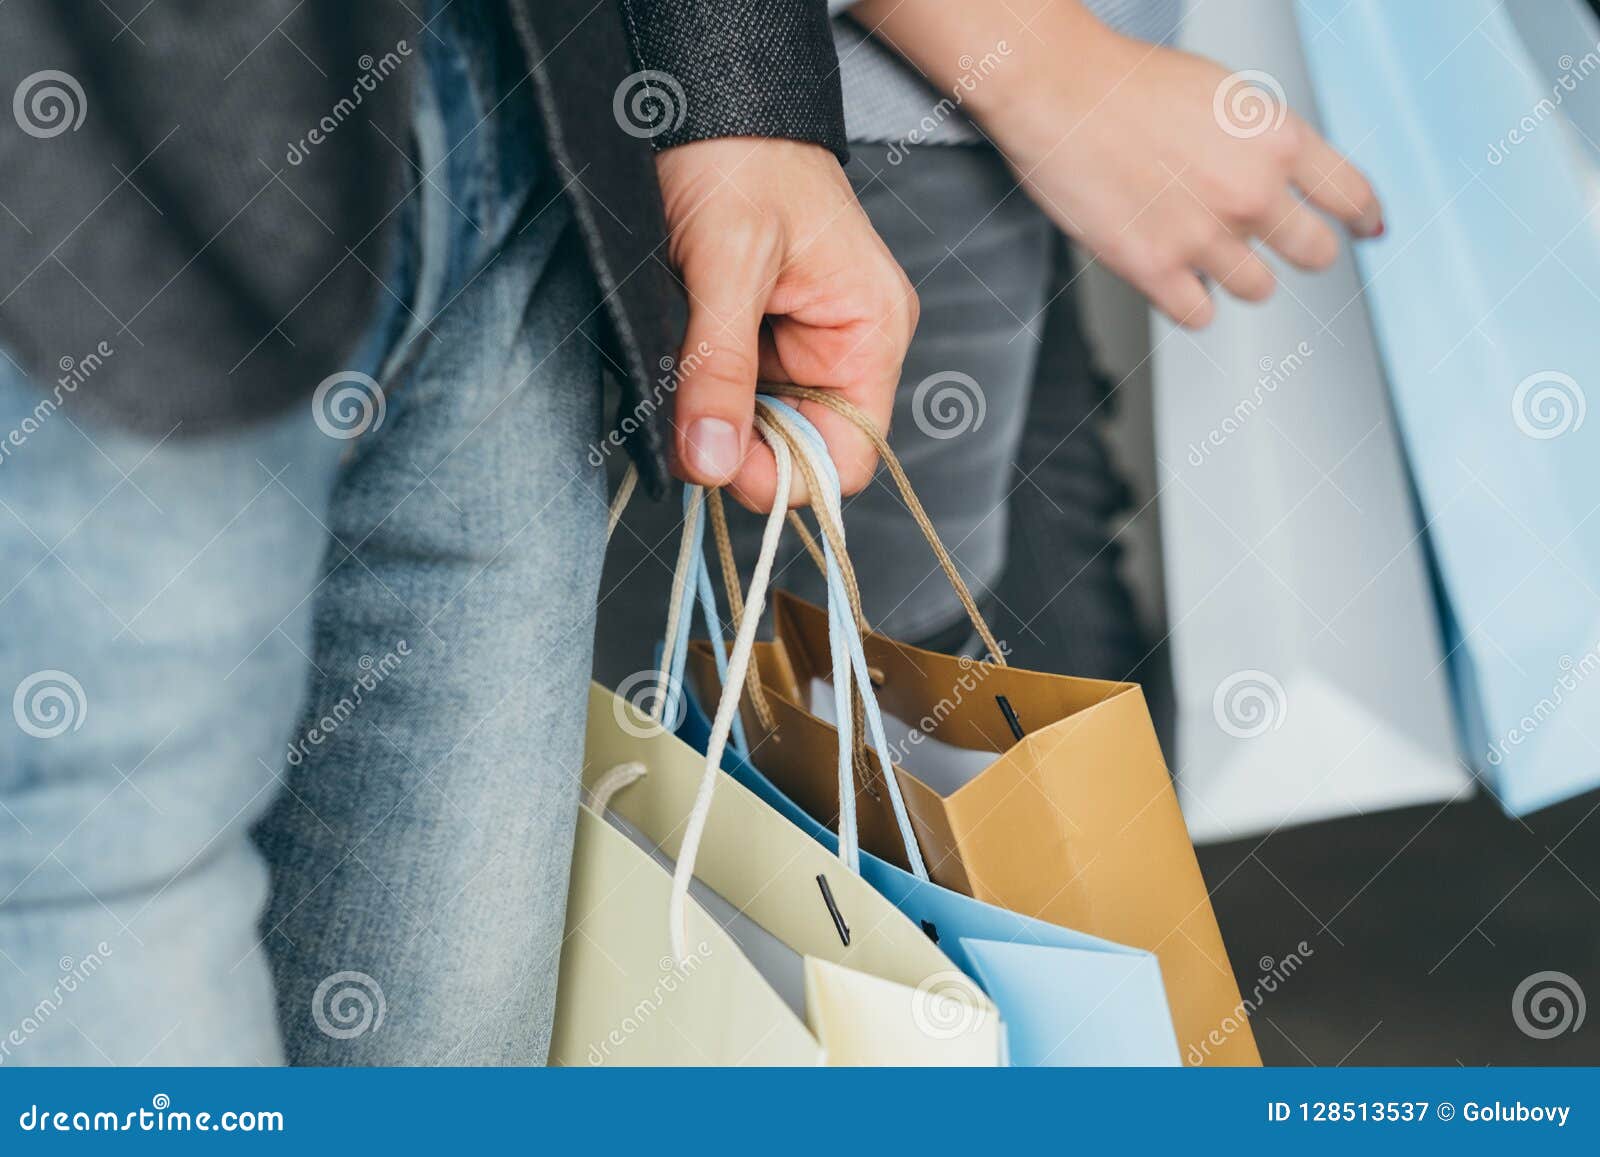 Человек продажи курортного сезона покупок кладет руку в мешки. Продажа покупок и курортного сезона подрезанная съемка руки людей с множественными сумками